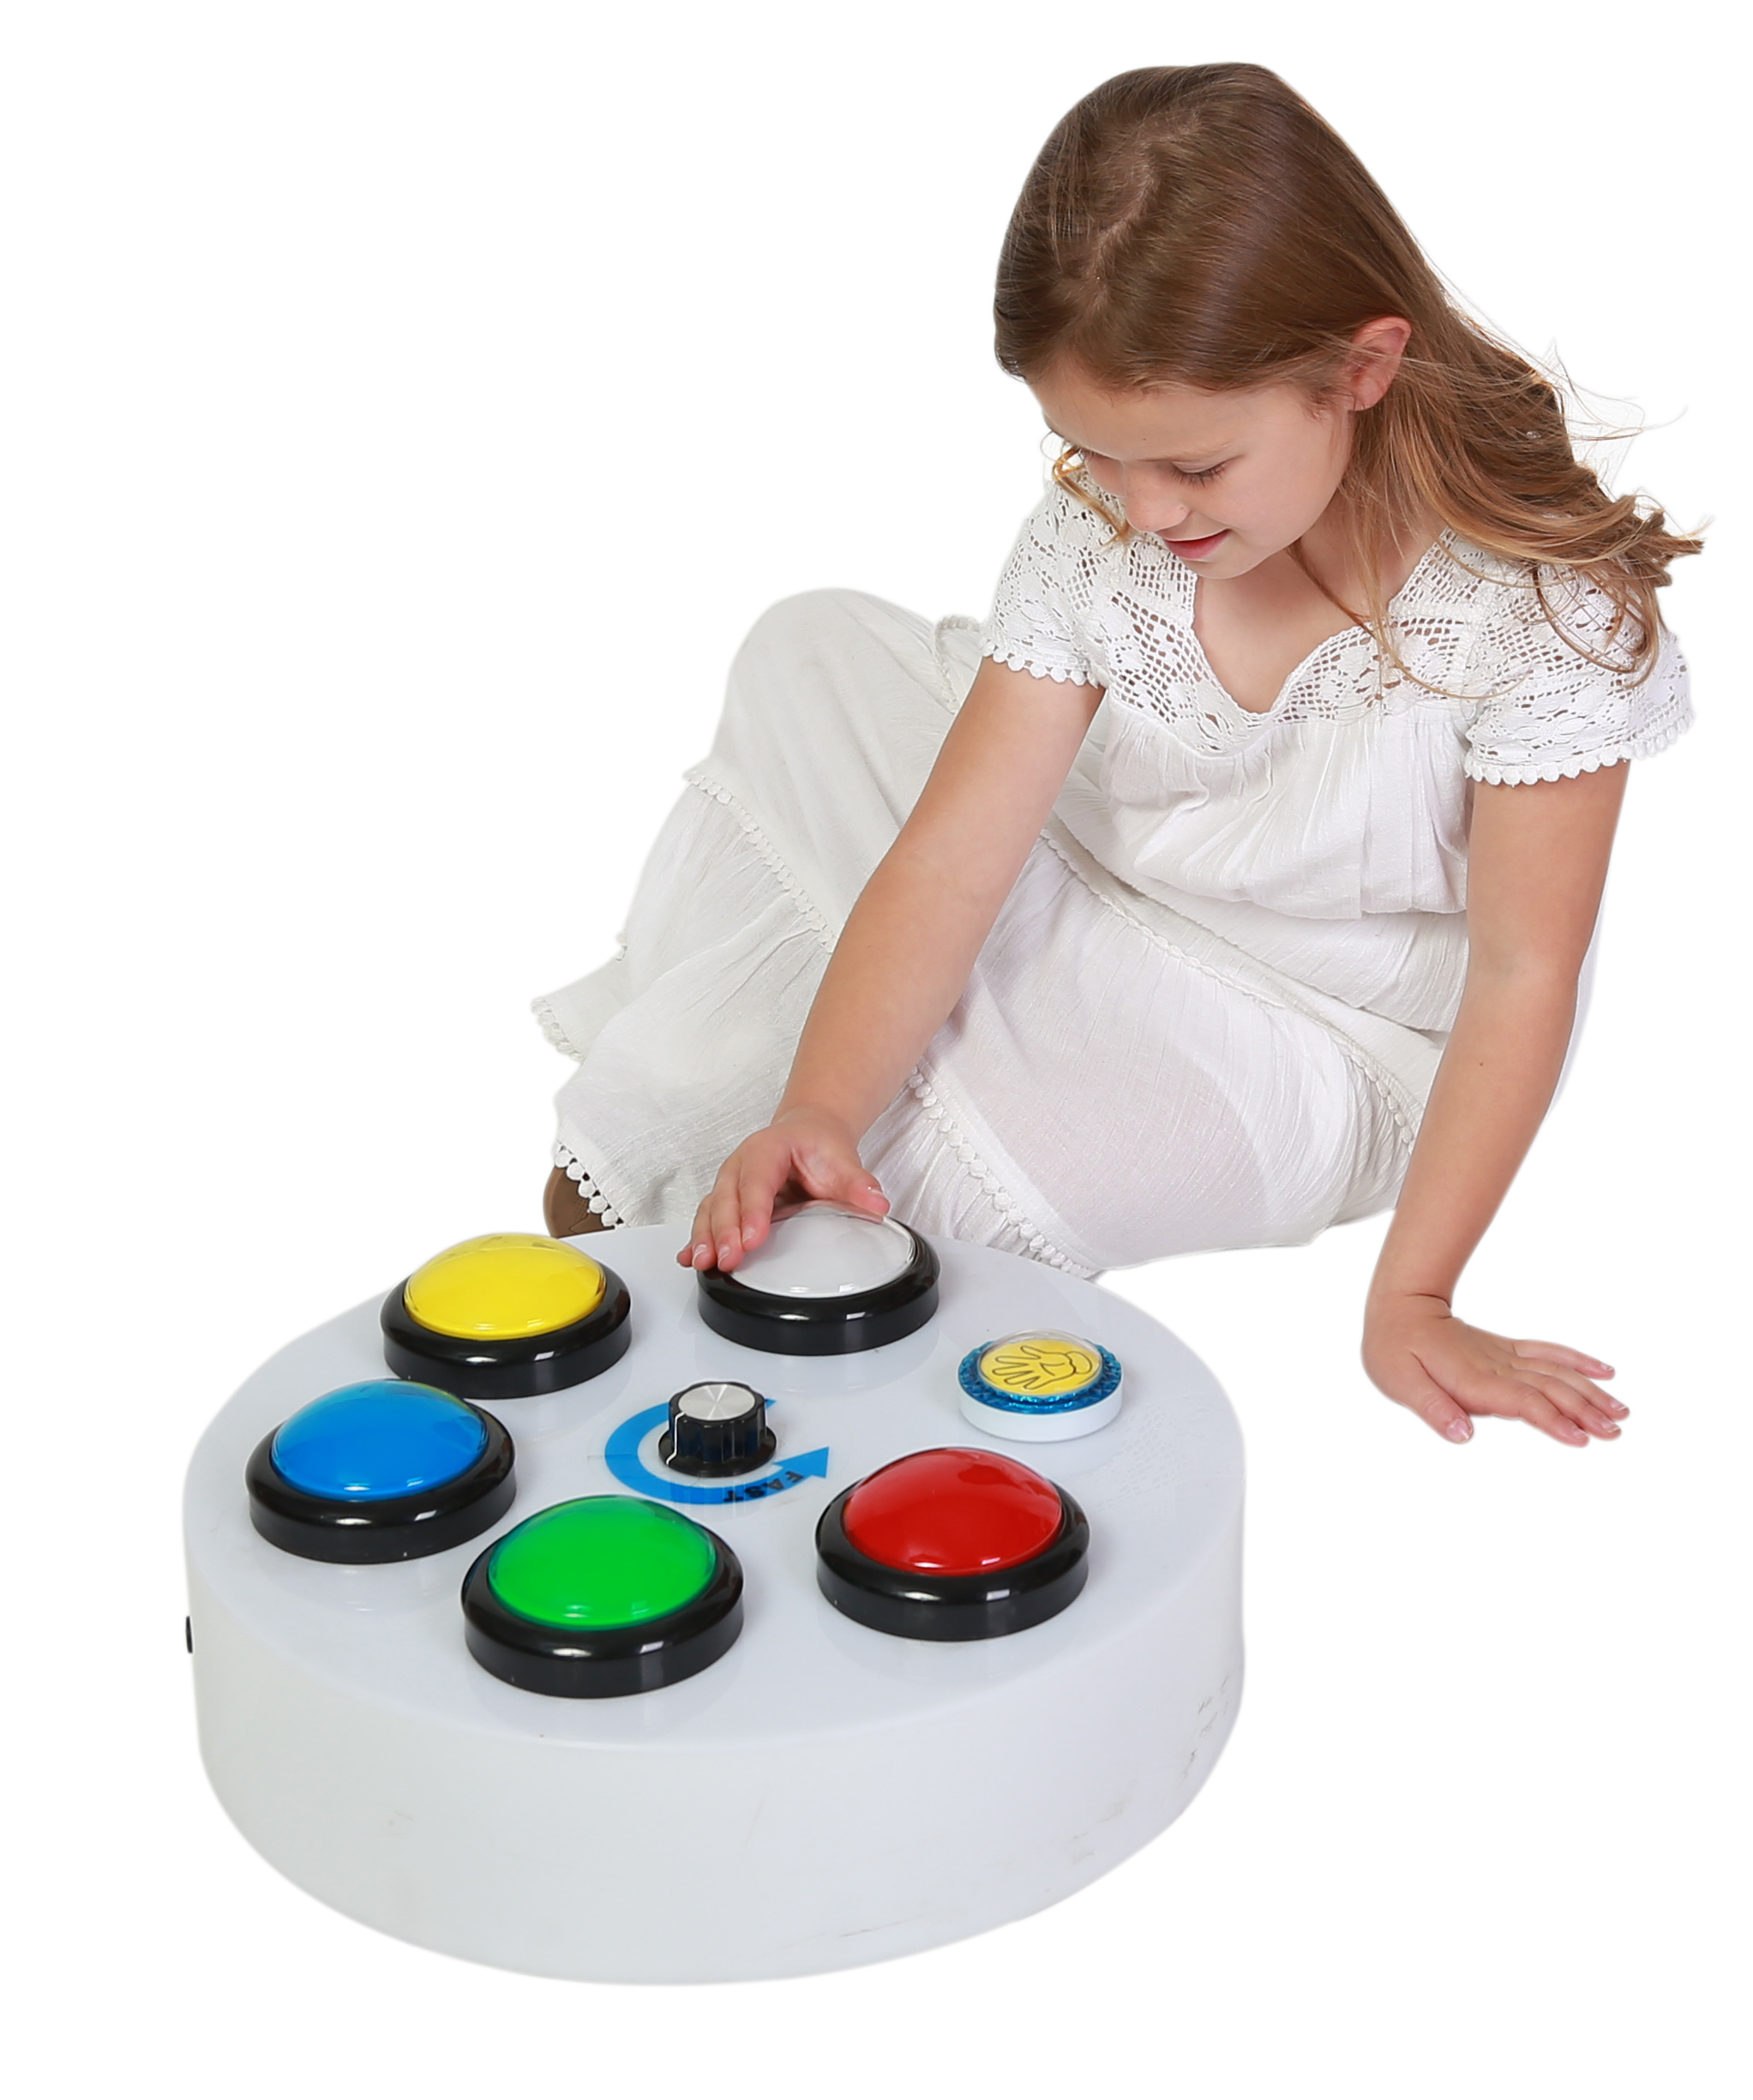 BTLBC Large Button Controller for Bubble Features 40cm with child